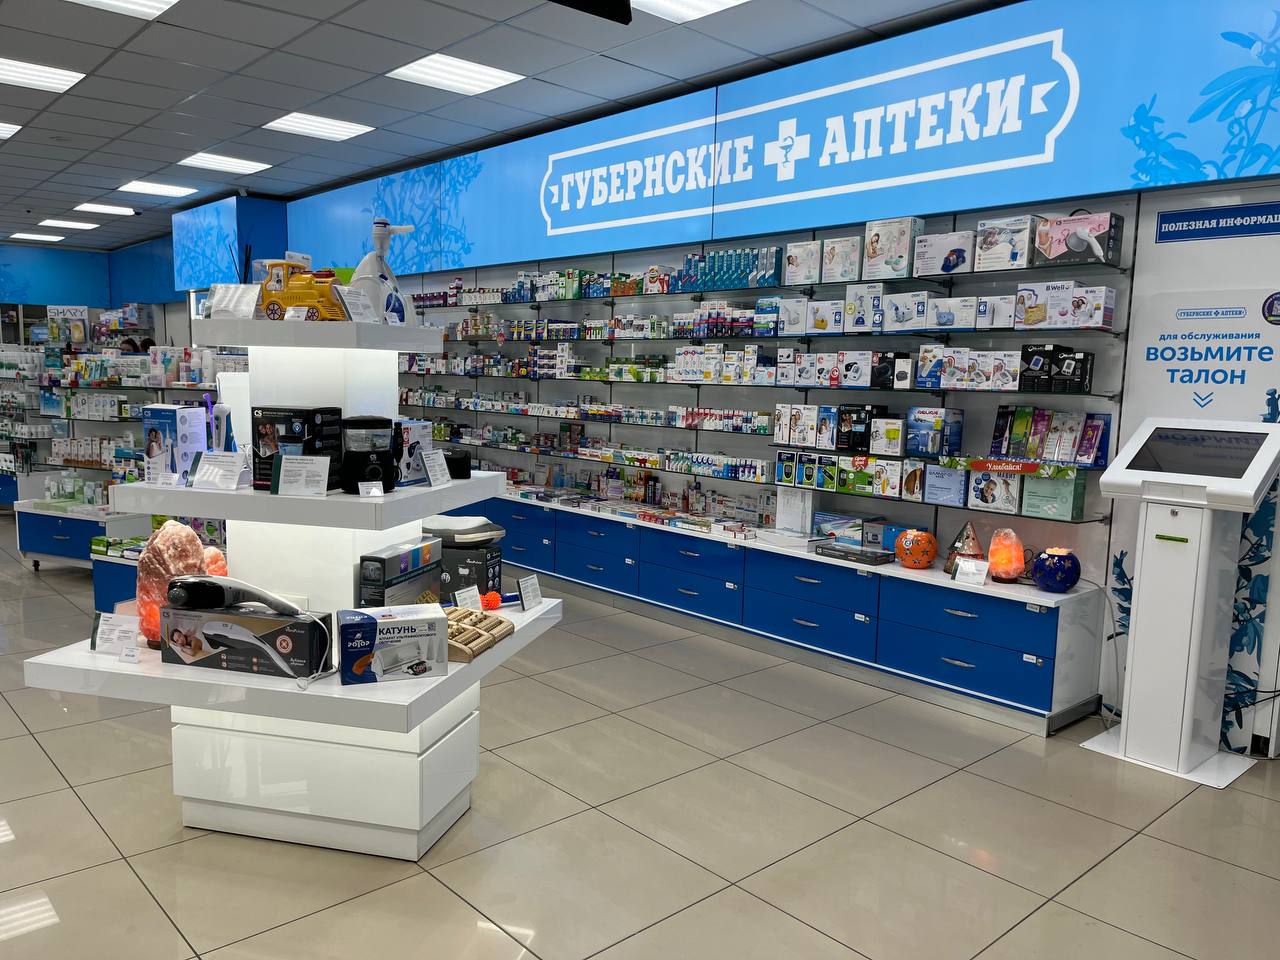 Участники Викторины о Красноярском крае могут получить скидку на товары крупной аптечной сети